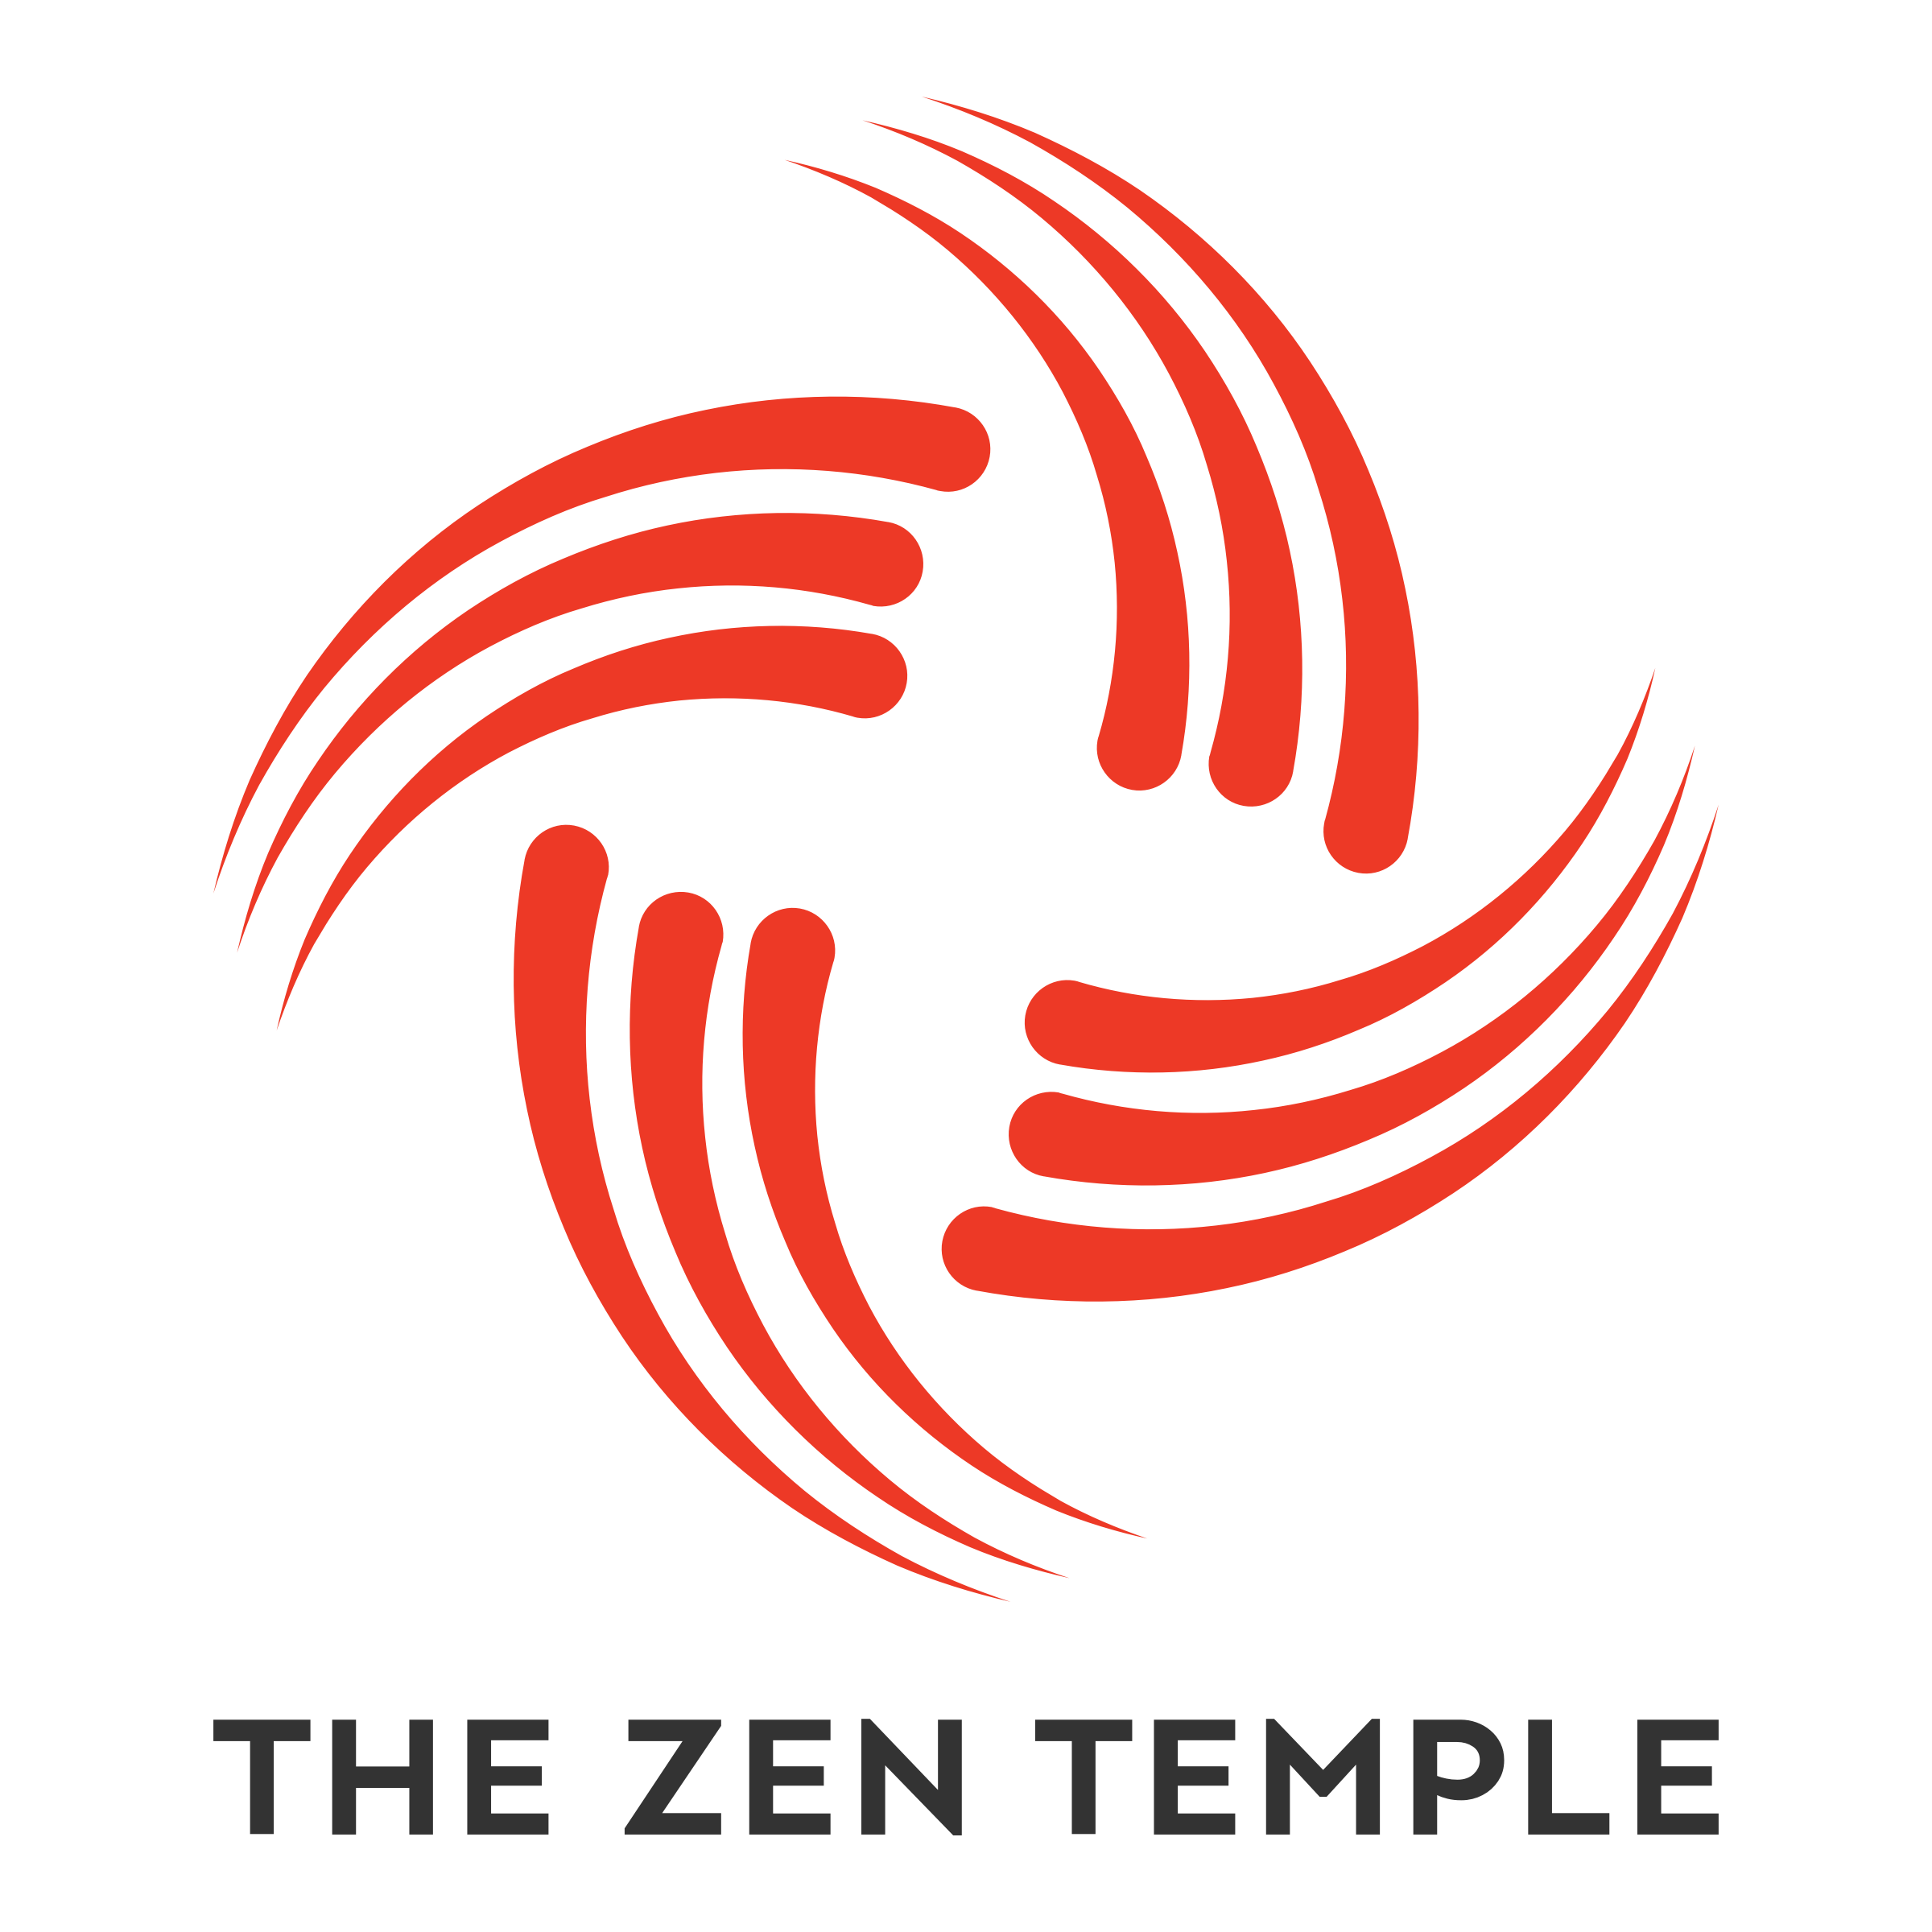 zen logo design